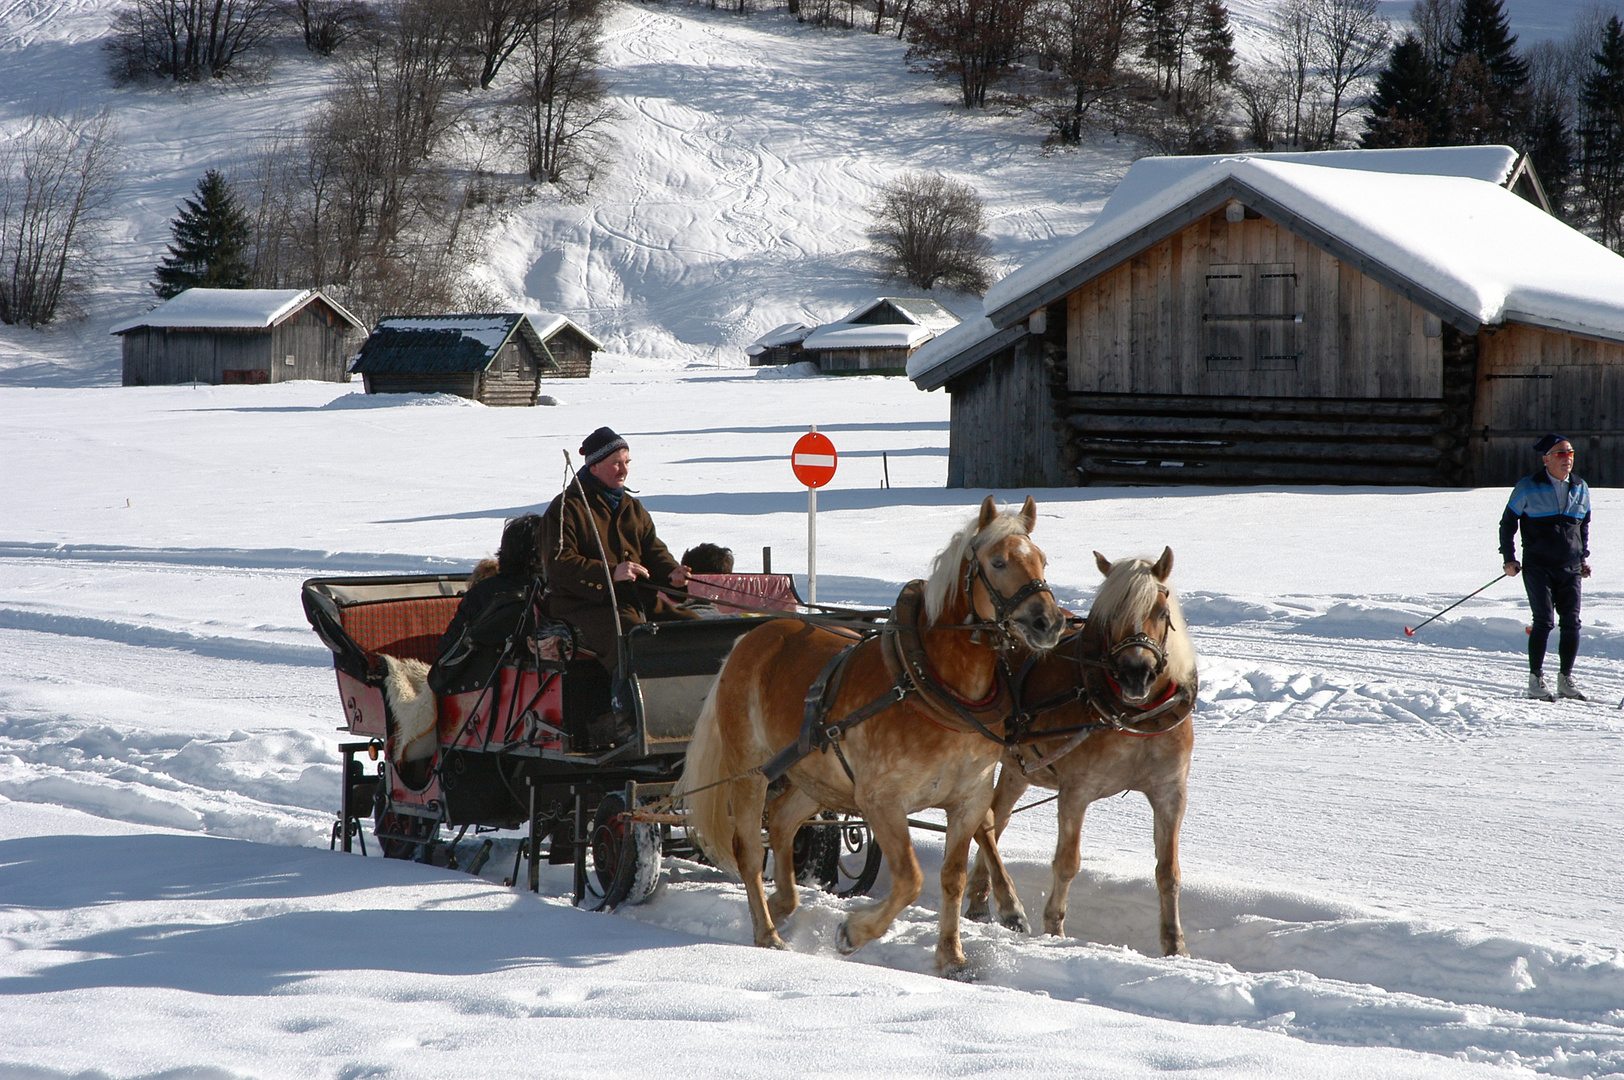 Winter in Garmisch-Partenkirchen